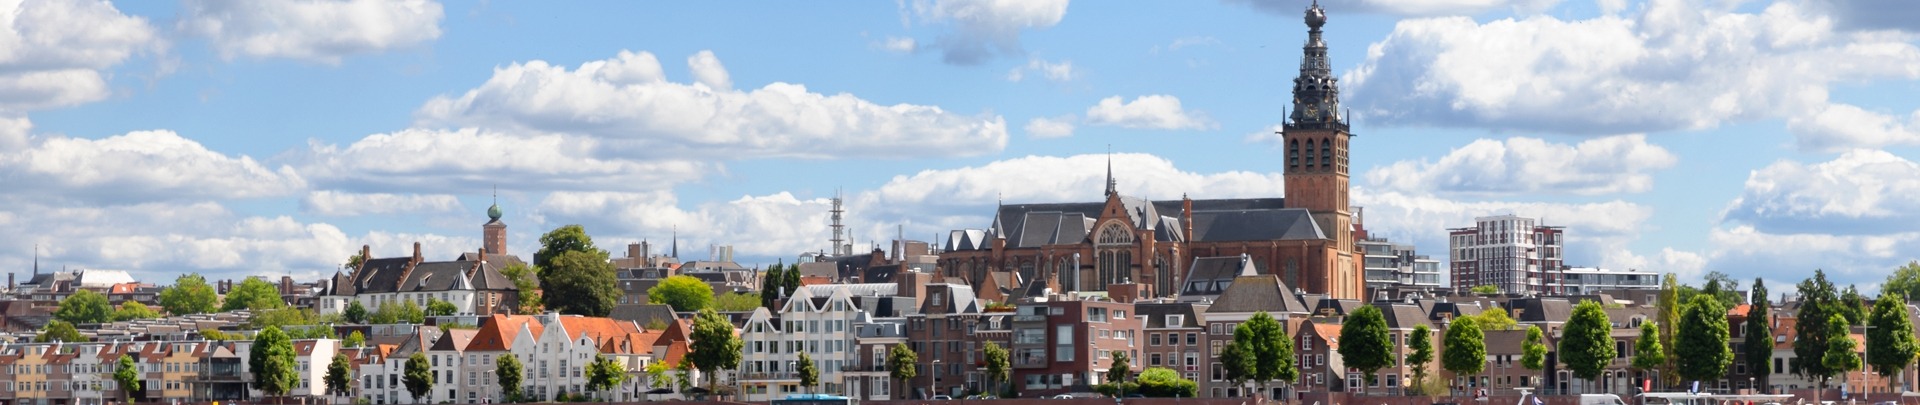 skyline van Nijmegen